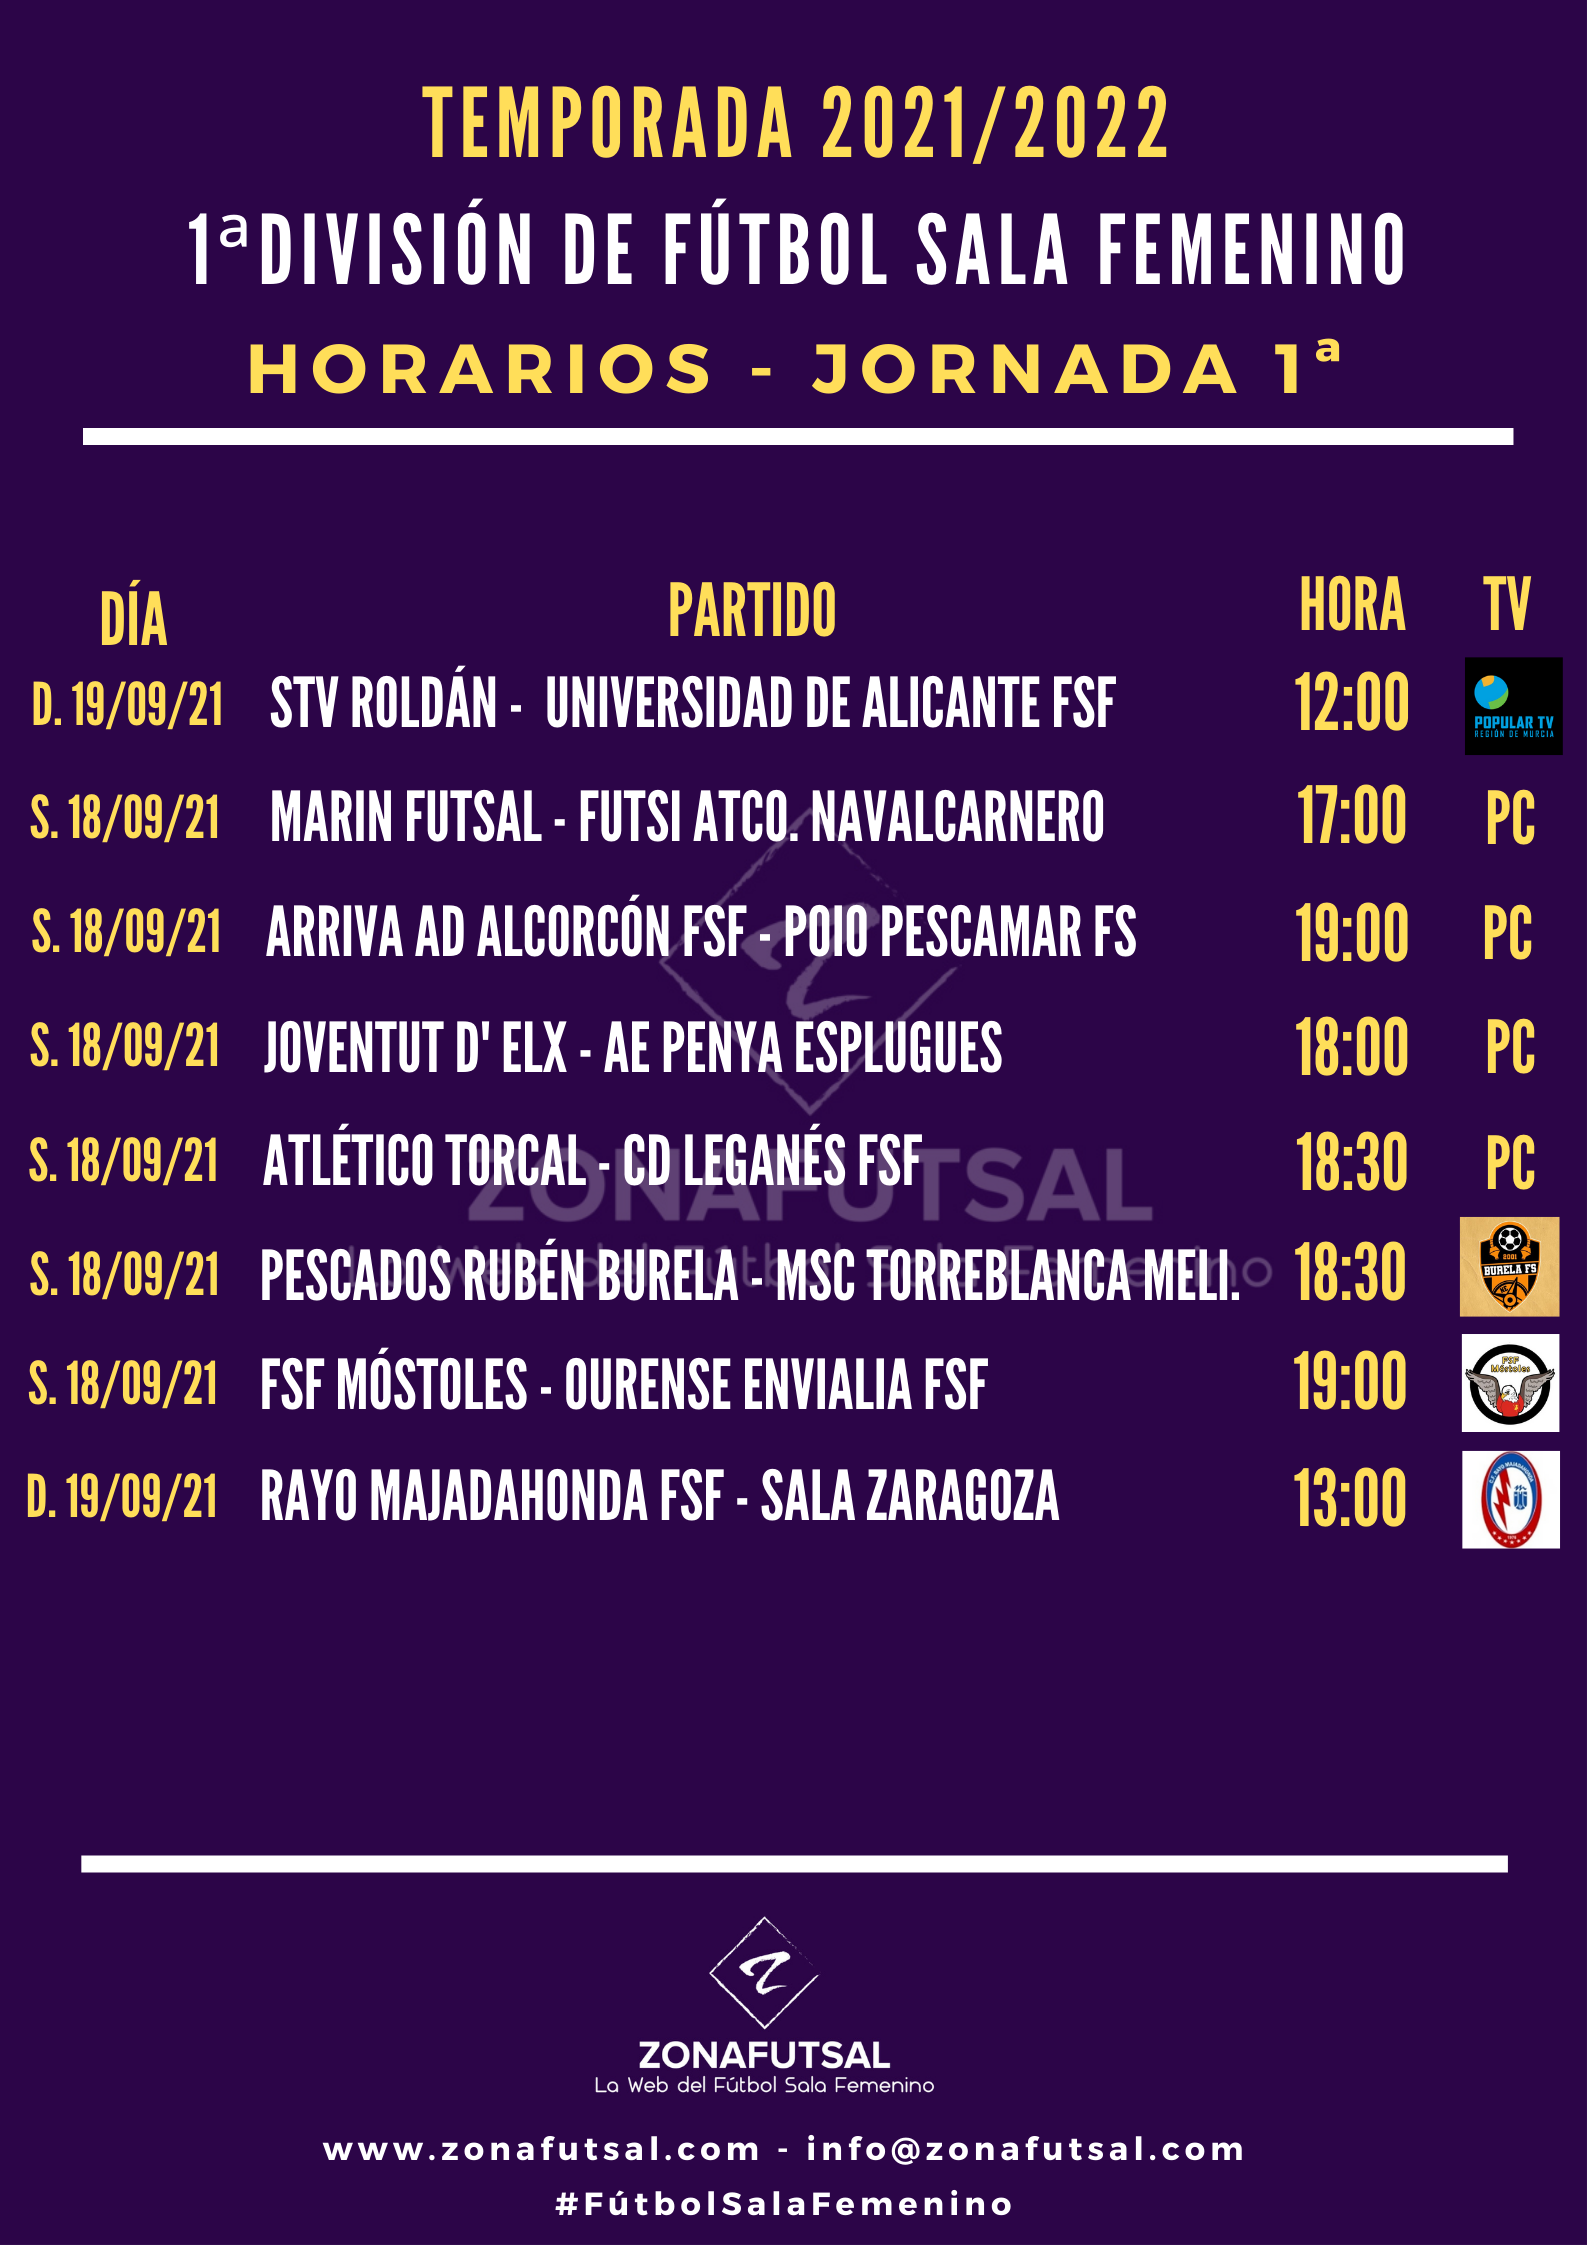 Horarios de la 1ª Jornada de la 1ª División de Fútbol Sala Femenino. Temporada 2021/2022